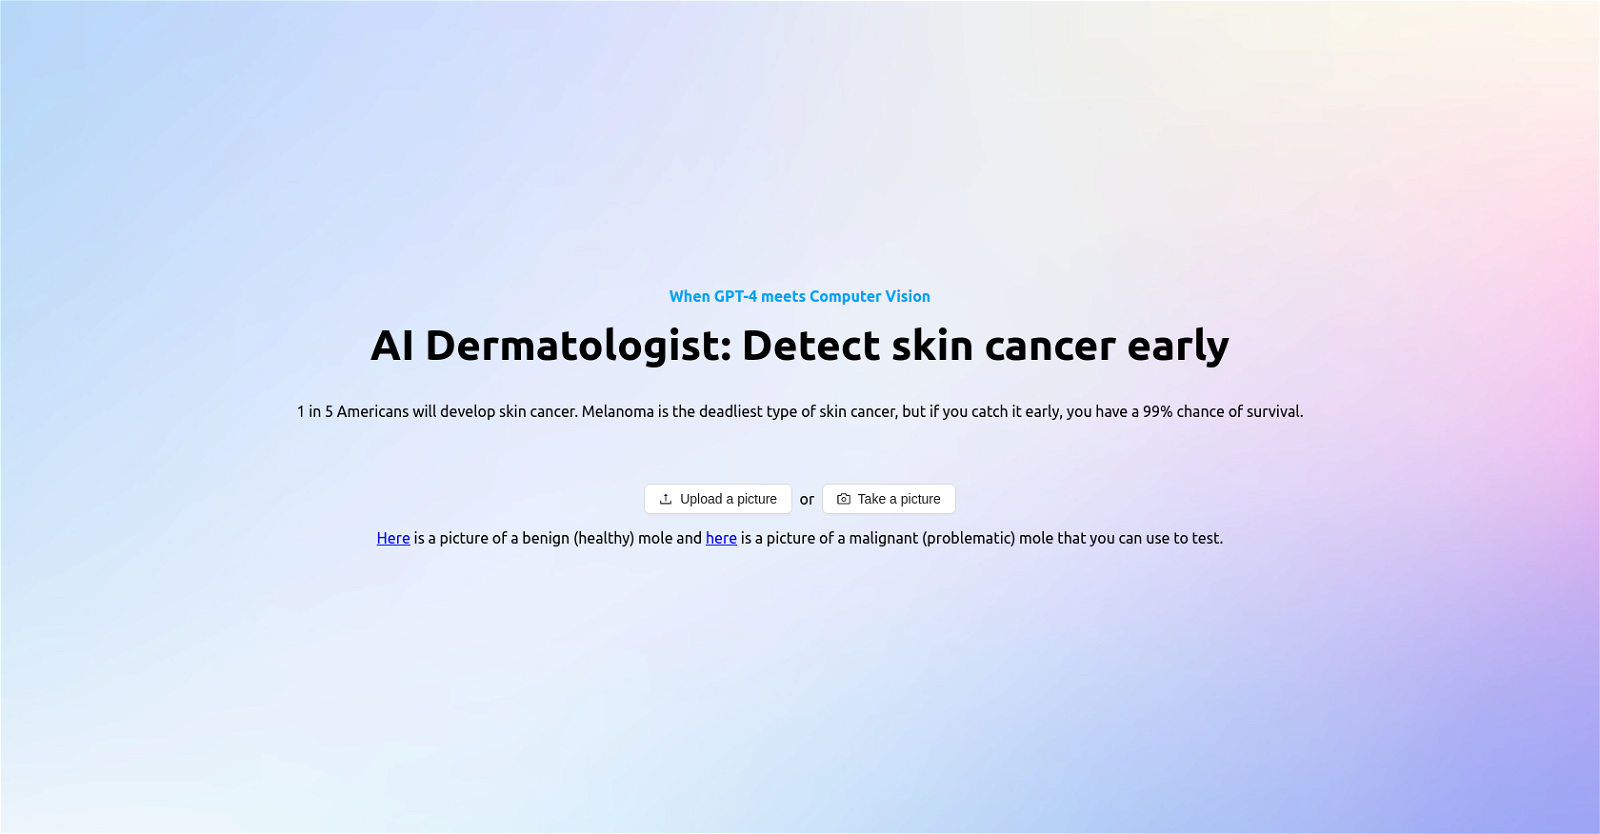 Skinguardai website